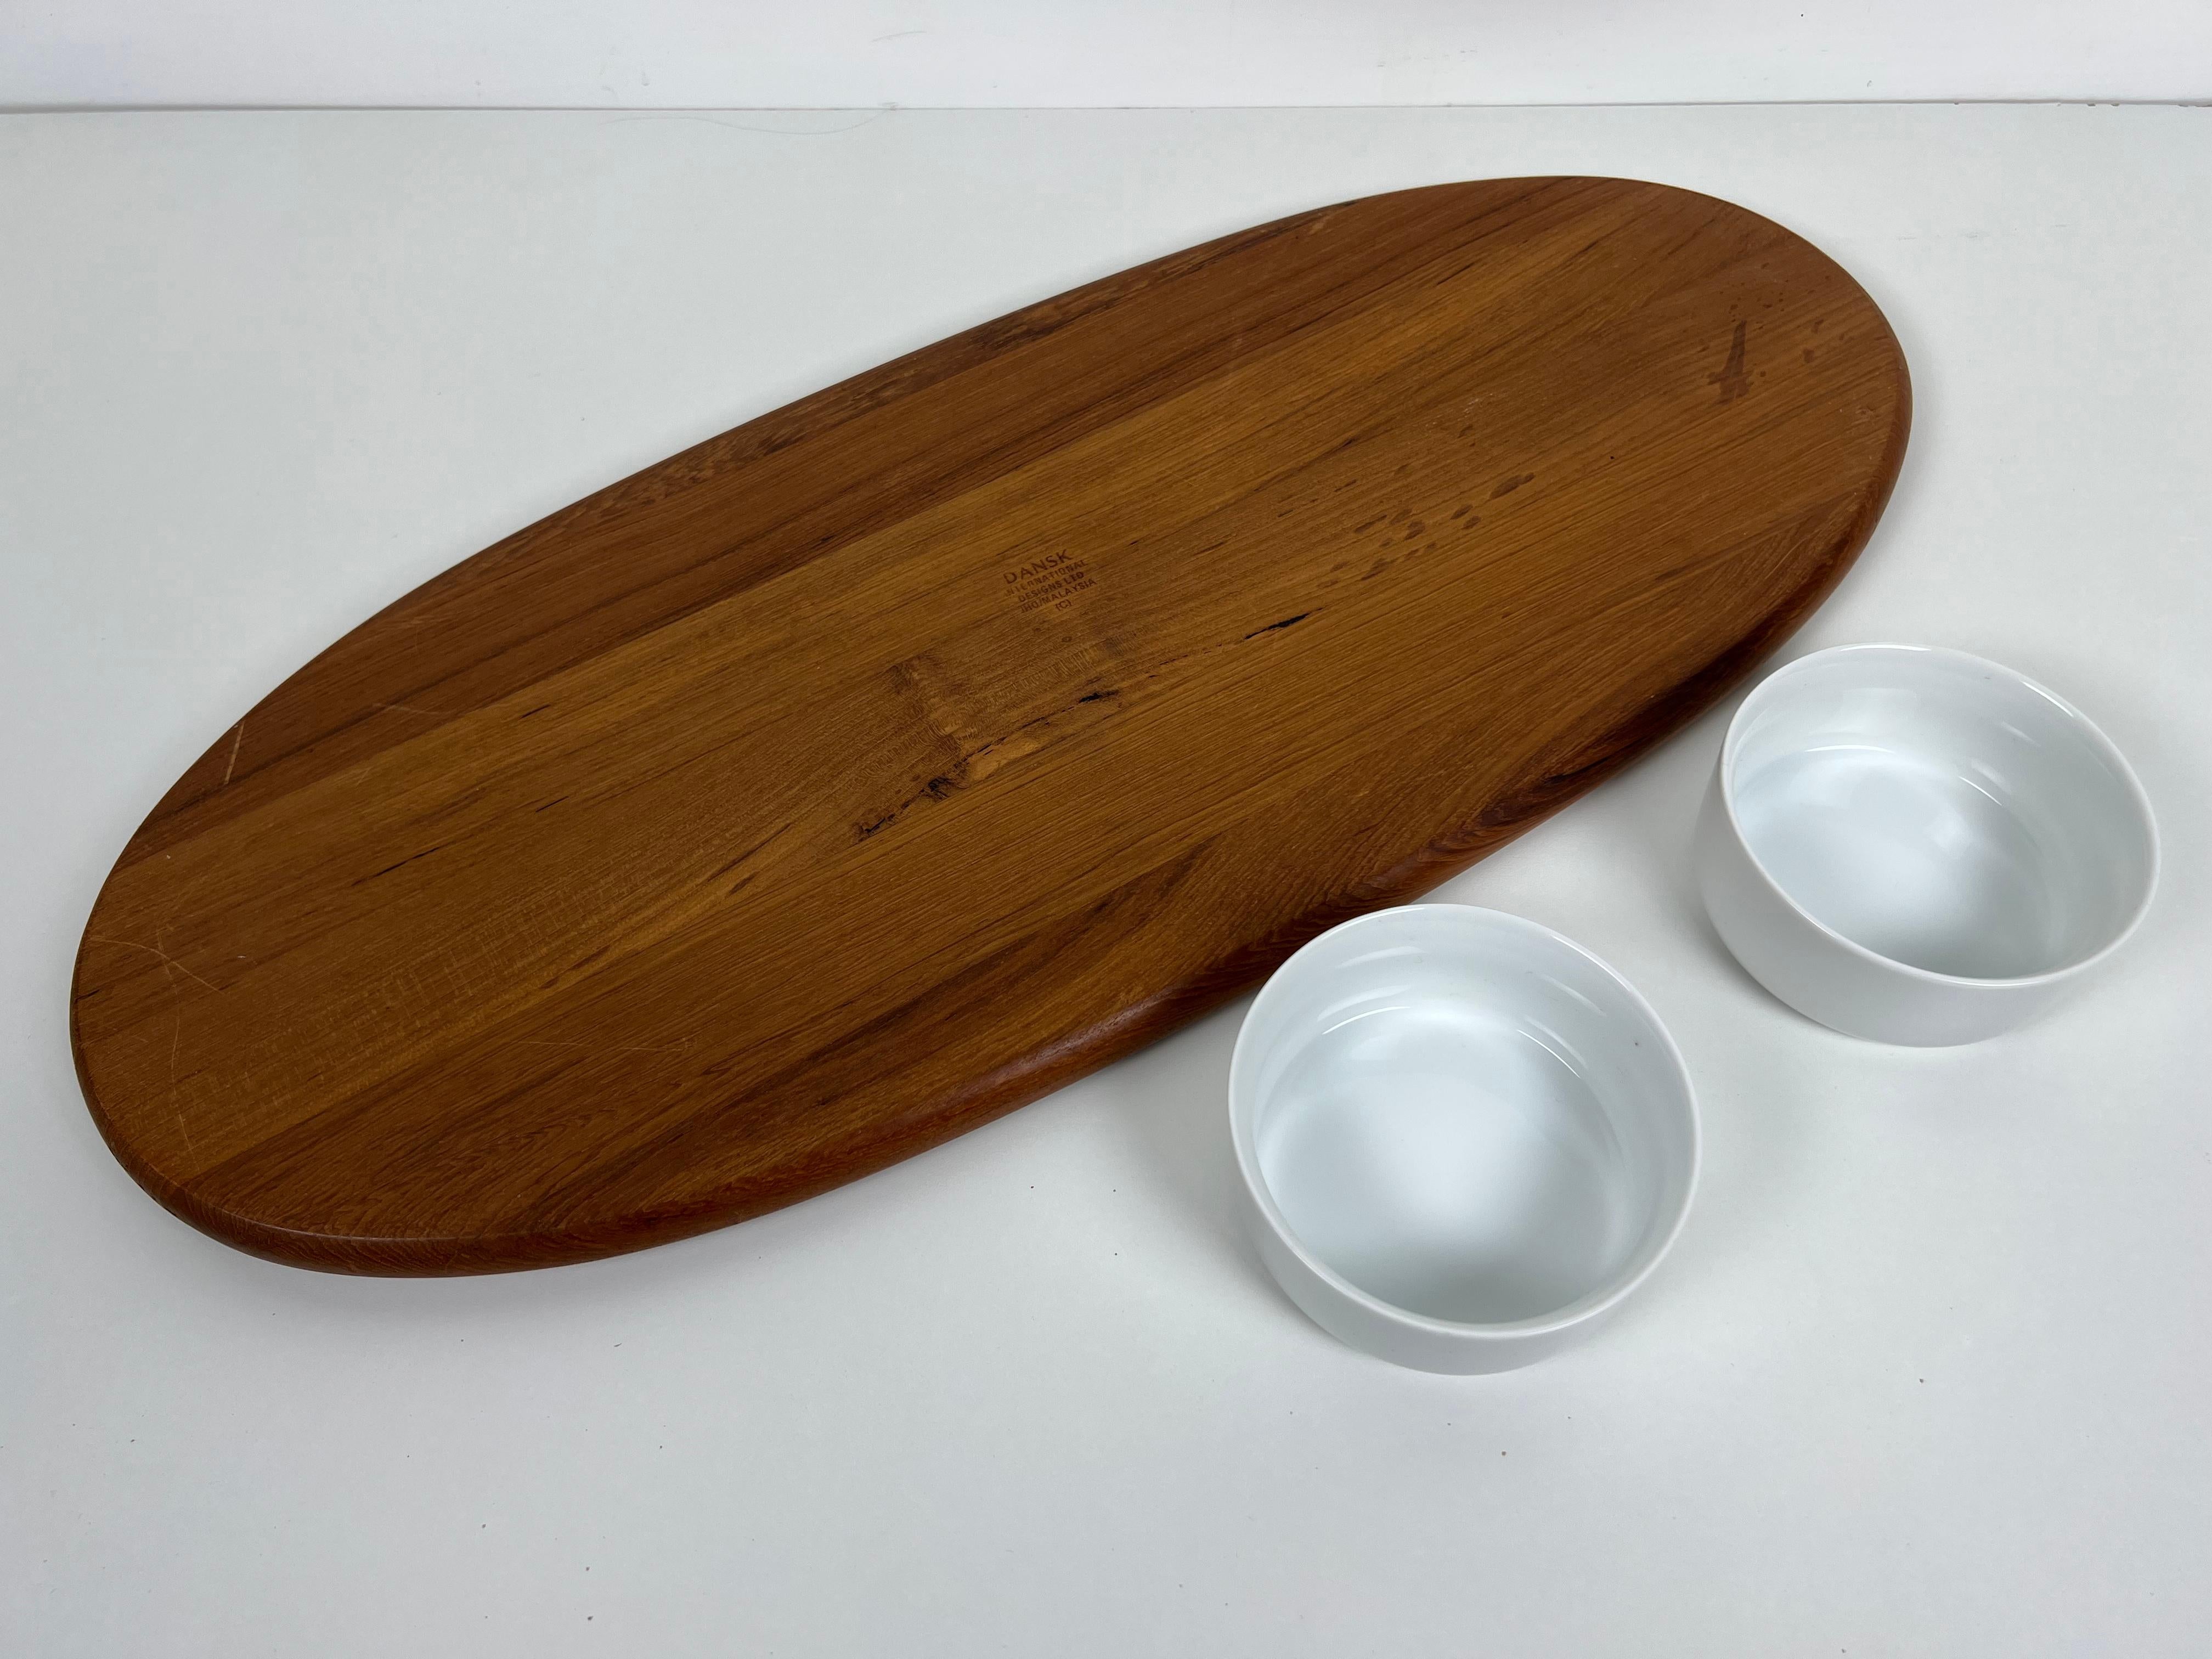 Teak Serving Platter with Bowls by Jens Quistgaard for Dansk 3